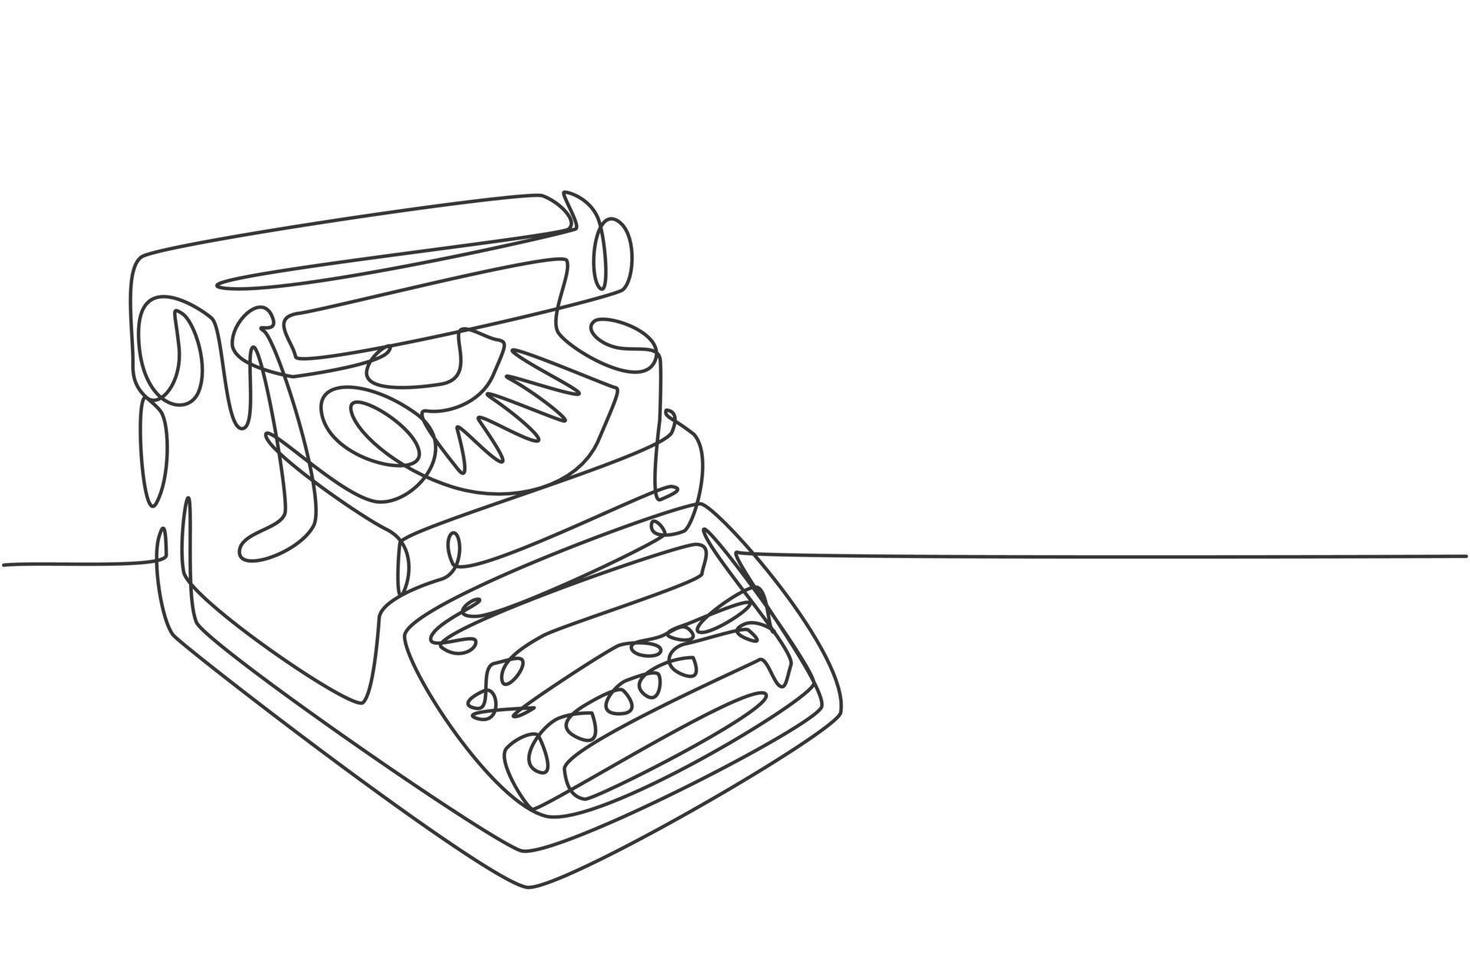 una singola linea di disegno della vecchia macchina da scrivere classica retrò impostato dalla vista laterale. concetto di elemento d'ufficio vintage disegno di linea continua disegno grafico illustrazione vettoriale